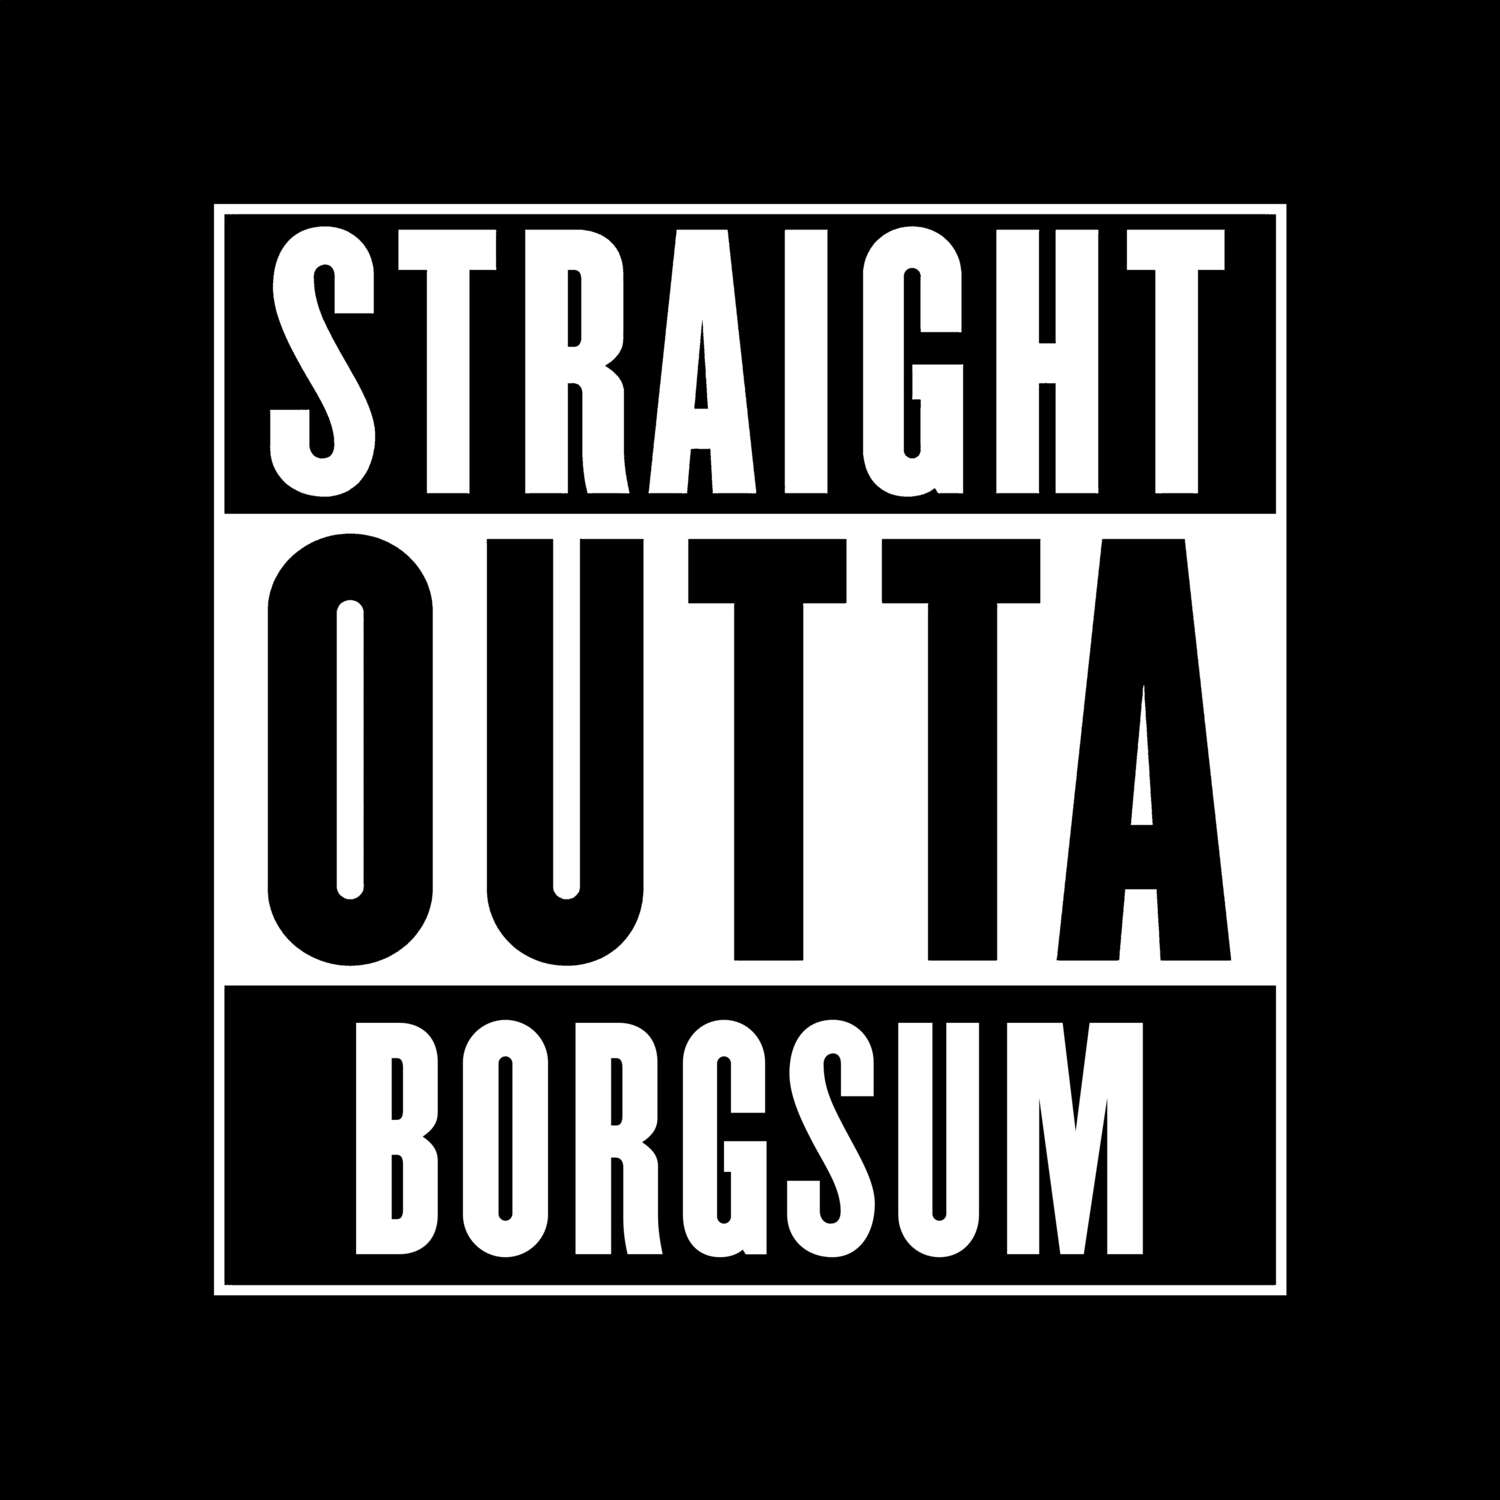 Borgsum T-Shirt »Straight Outta«